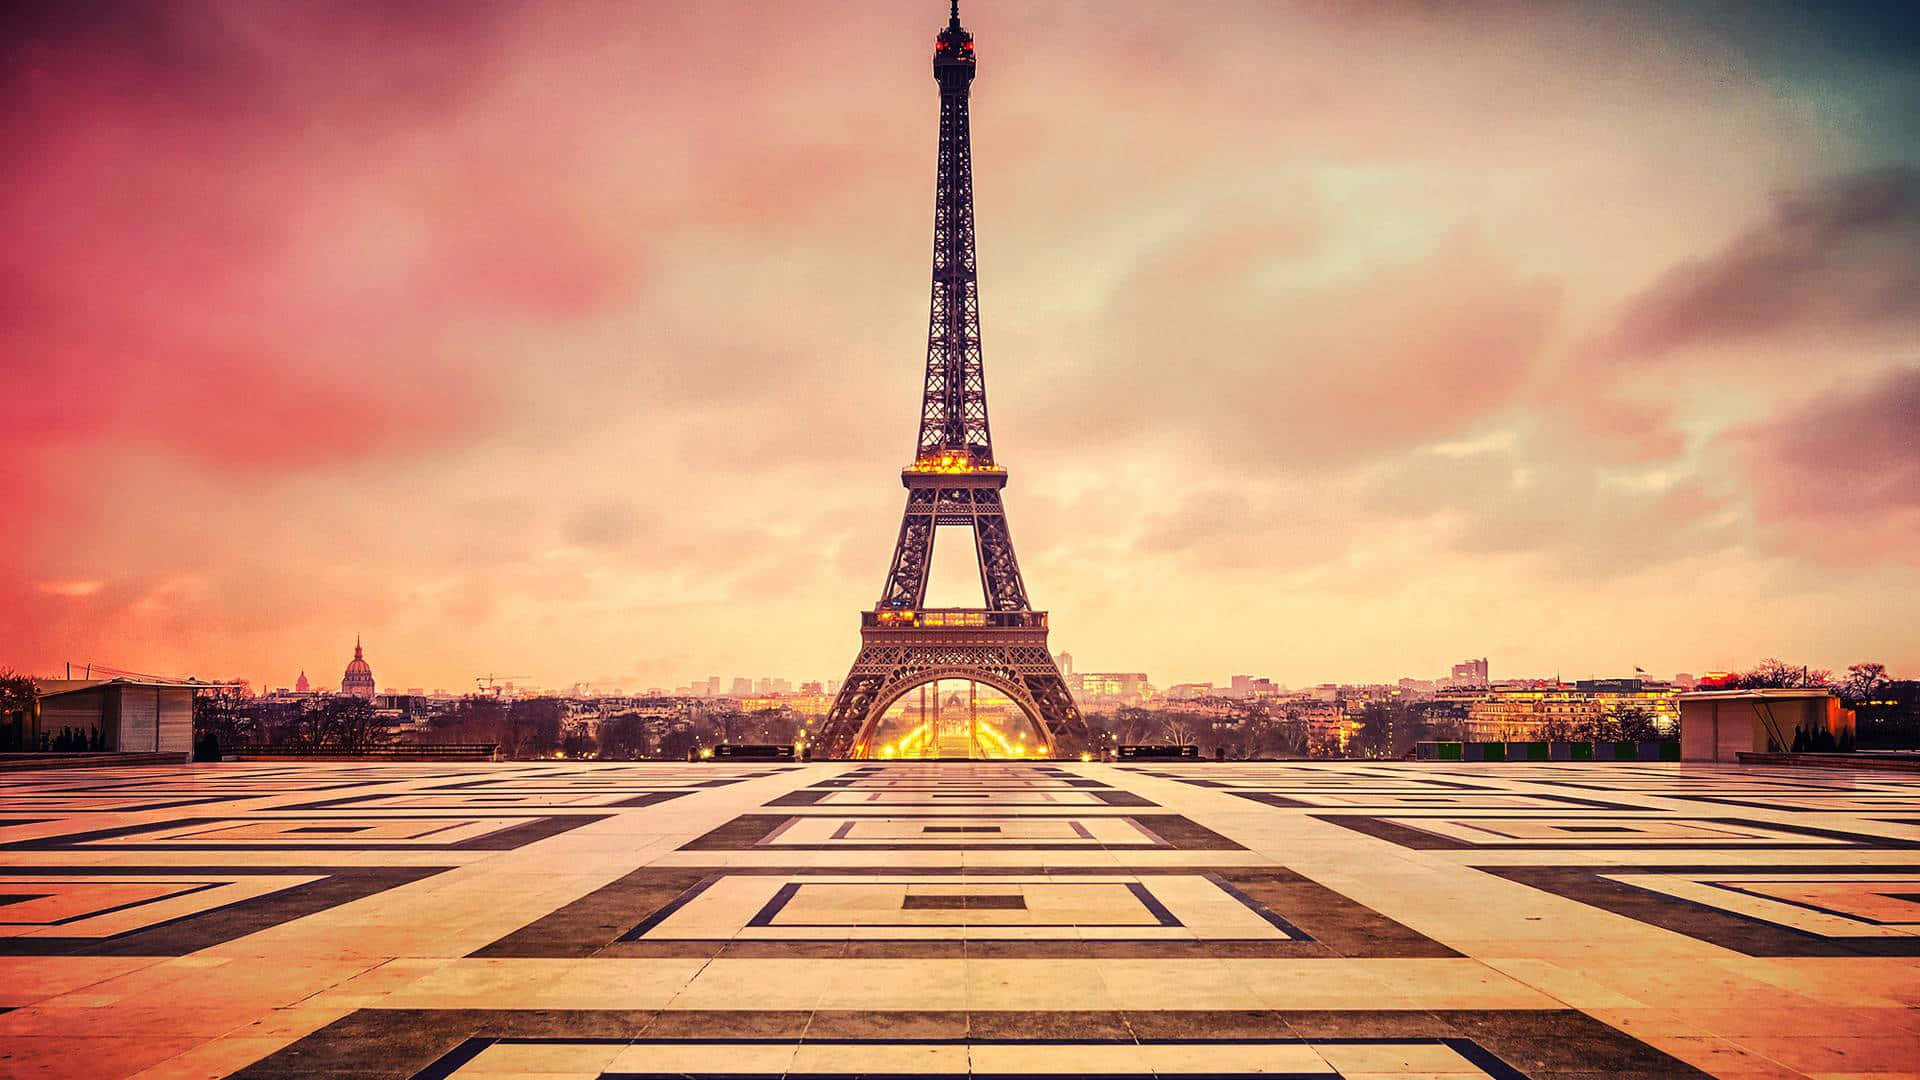 Besuchensie Paris, Den Eiffelturm Und Seine Umgebung.